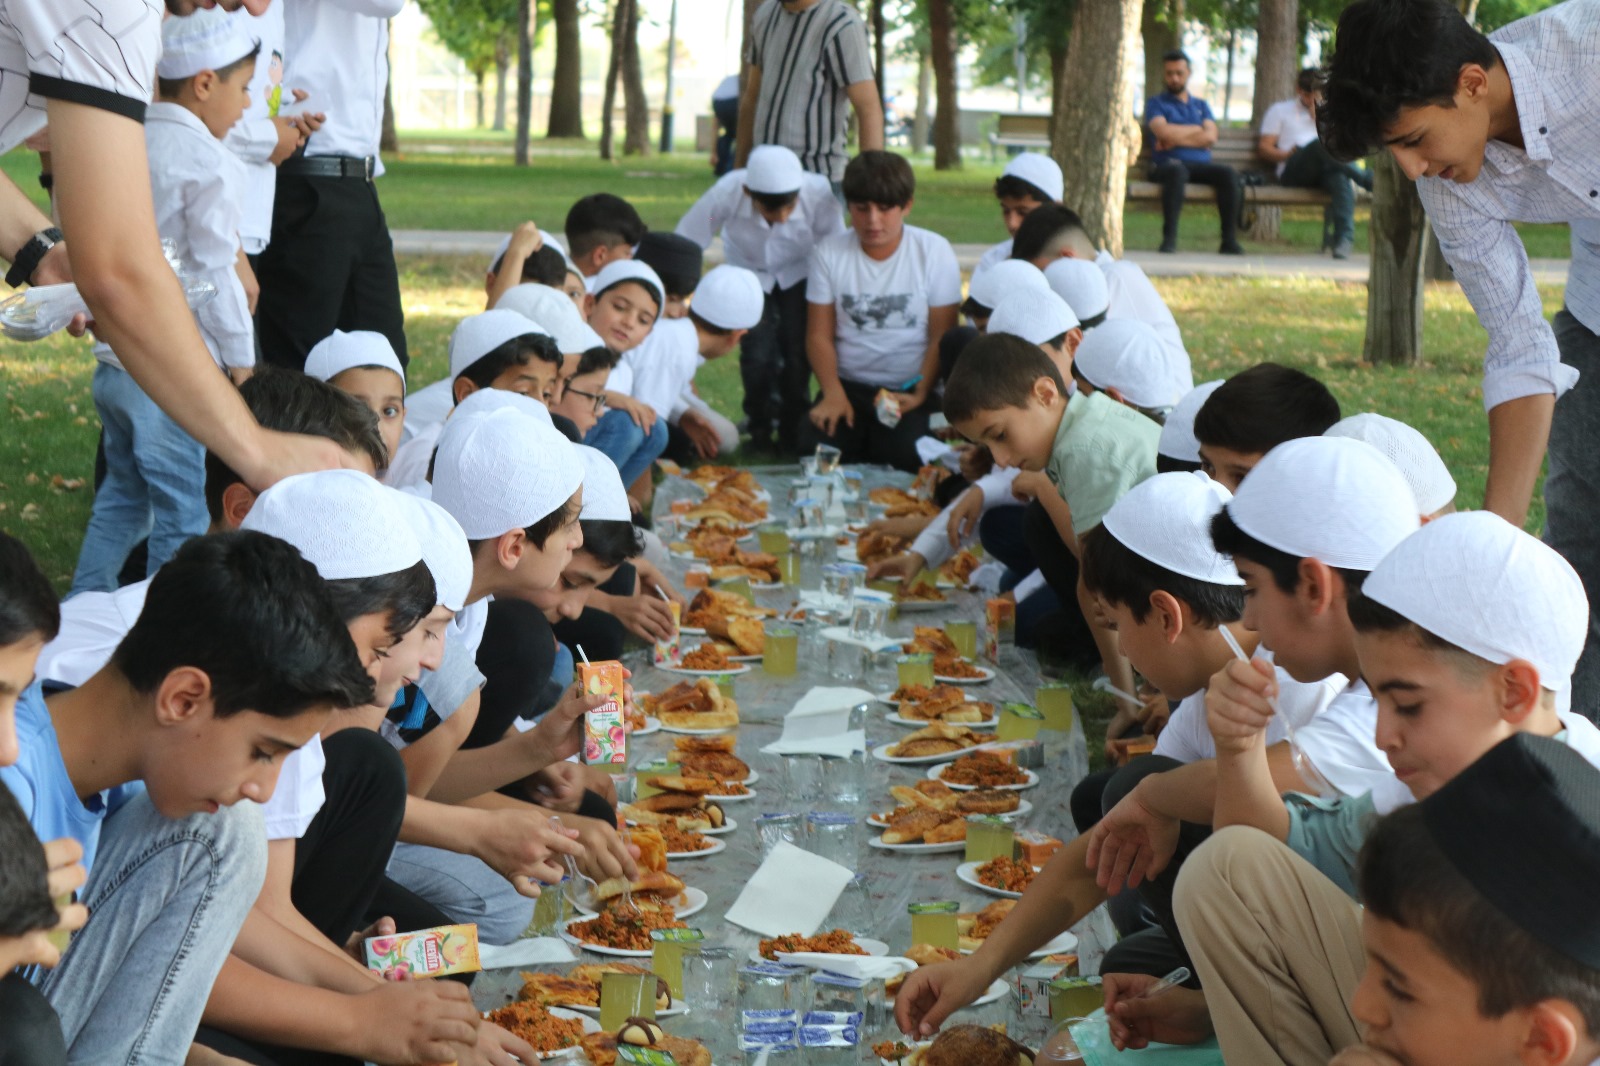 Kur'an Nesli Platformu tarafından Bismil'de gerçekleştirilen "Hayat Namazla Güzeldir" etkinliği kapsamında Millet Bahçesinde onlarca çocuk cemaatle namaz kıldı.